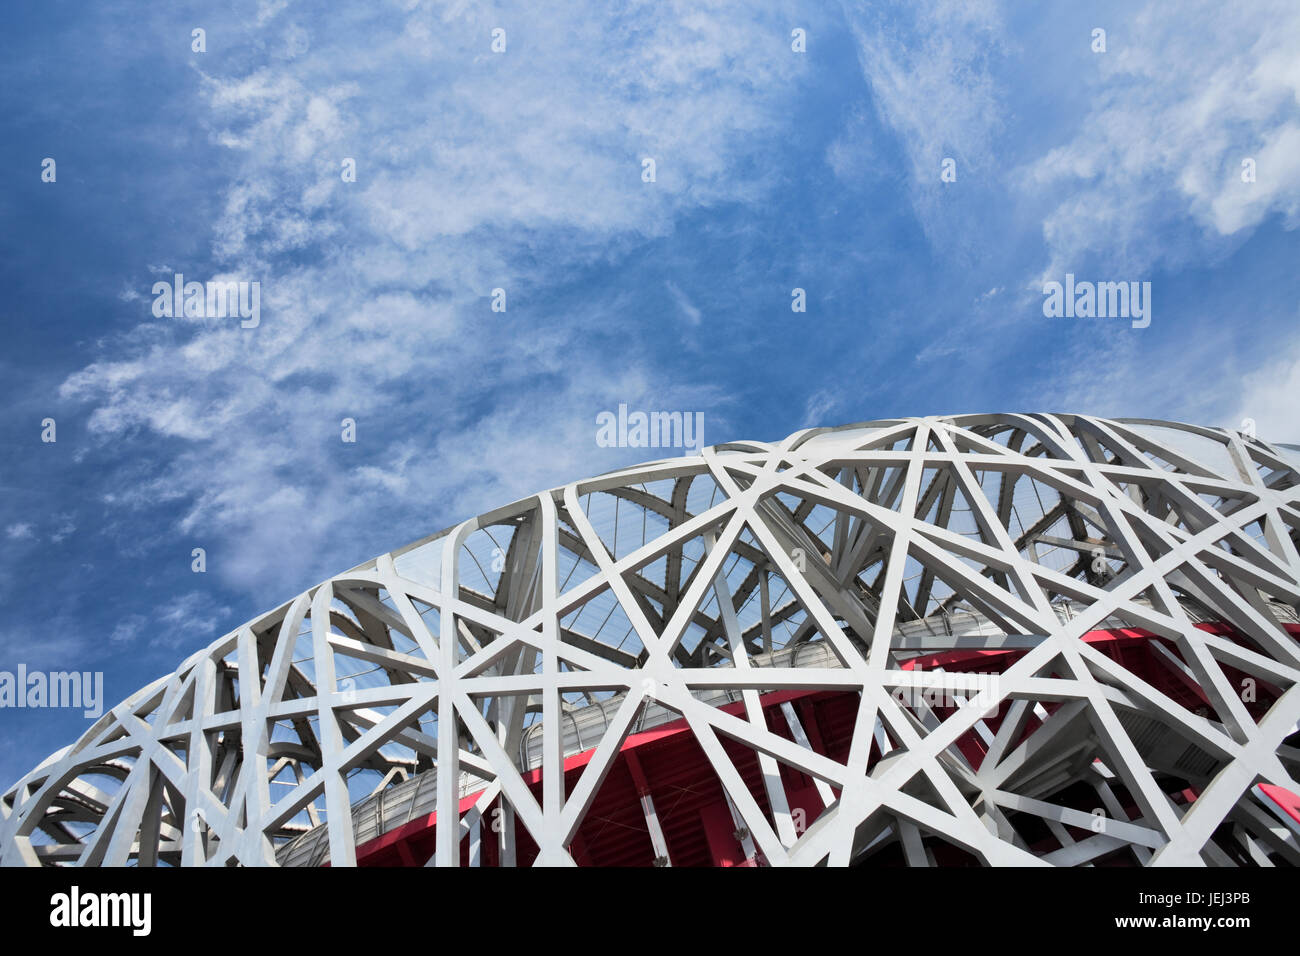 PECHINO - SETTEMBRE 17. Nido d'uccello di giorno. Il Bird's Nest è uno stadio di Pechino, è stato progettato per le Olimpiadi estive del 2008. Foto Stock